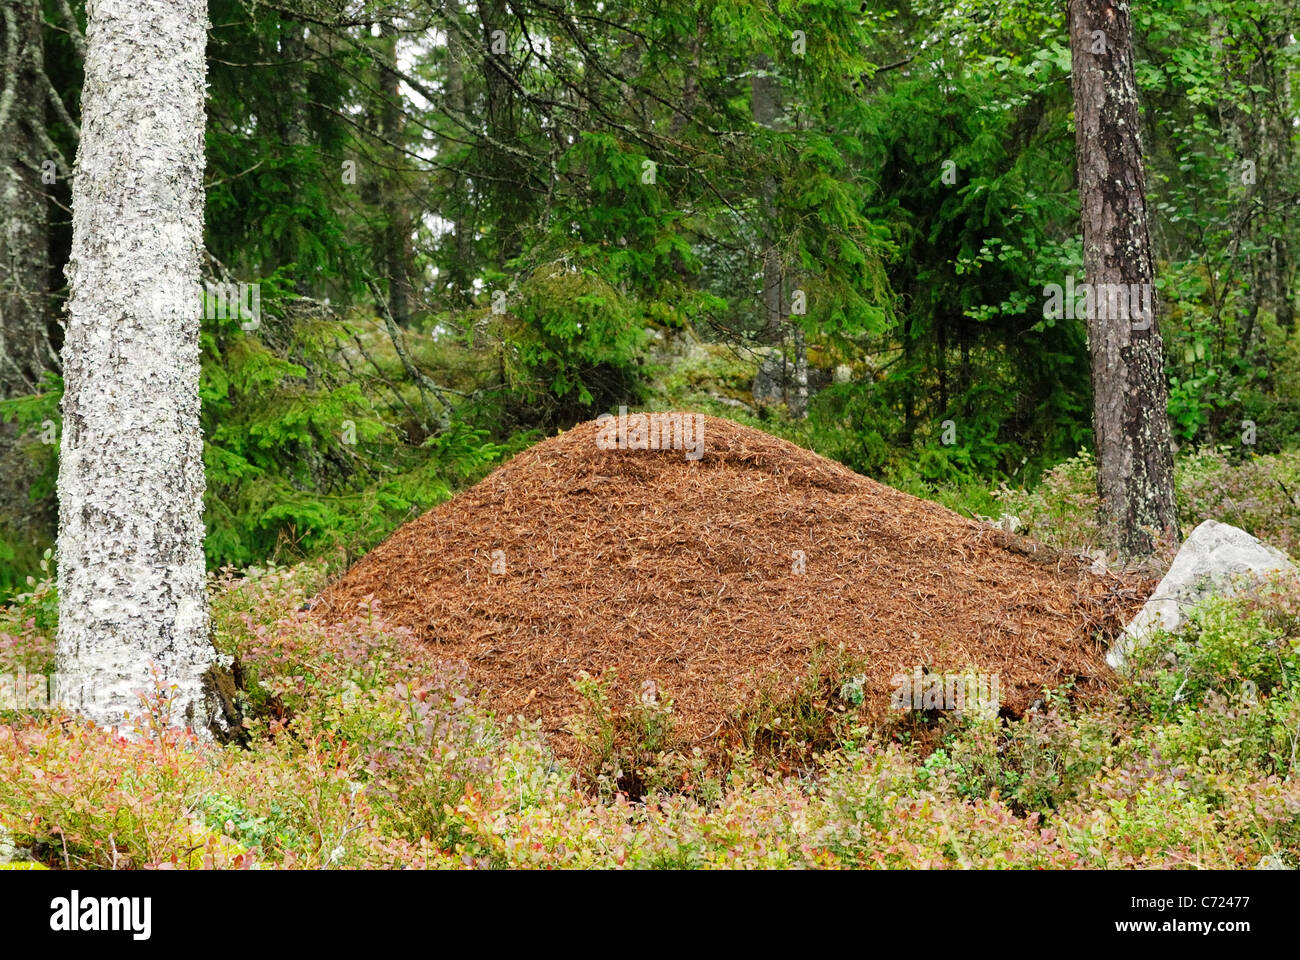 Fourmi énorme nid (Formica rufa) dans une forêt suédoise Banque D'Images